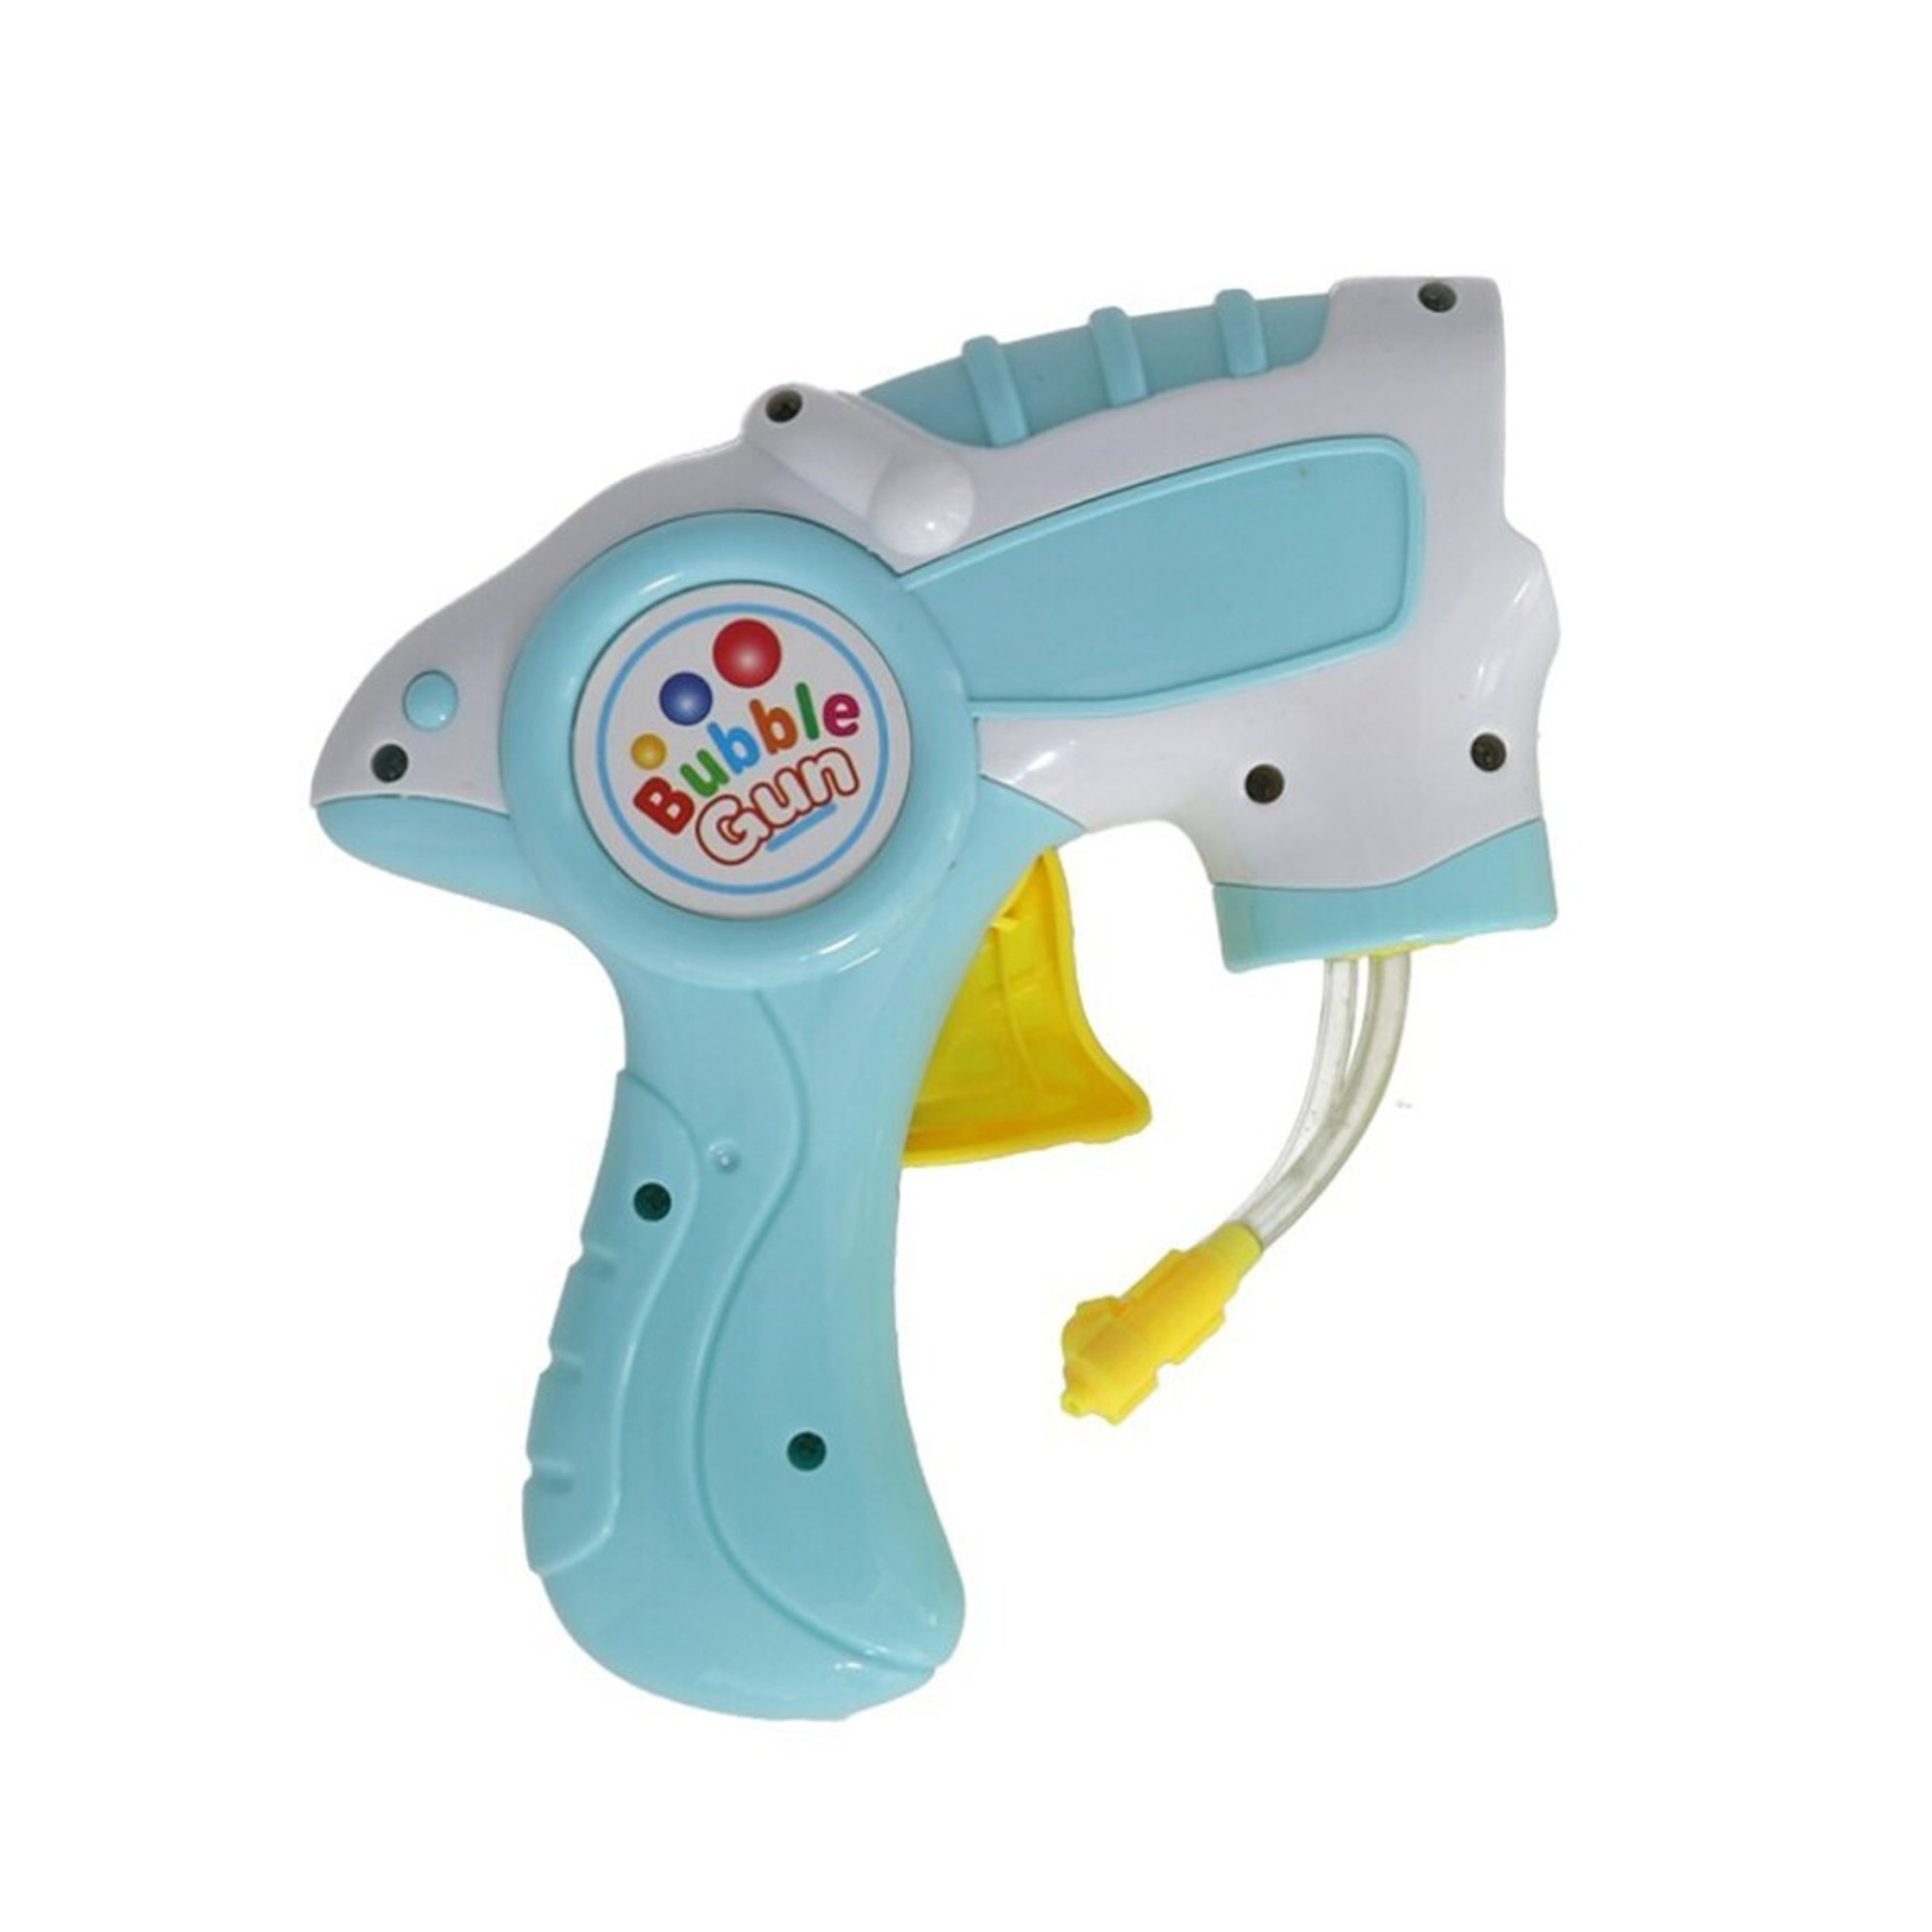 Bellenblaas speelgoed pistool - met vullingen - lichtblauw - 15 cm - plastic - bellen blazen